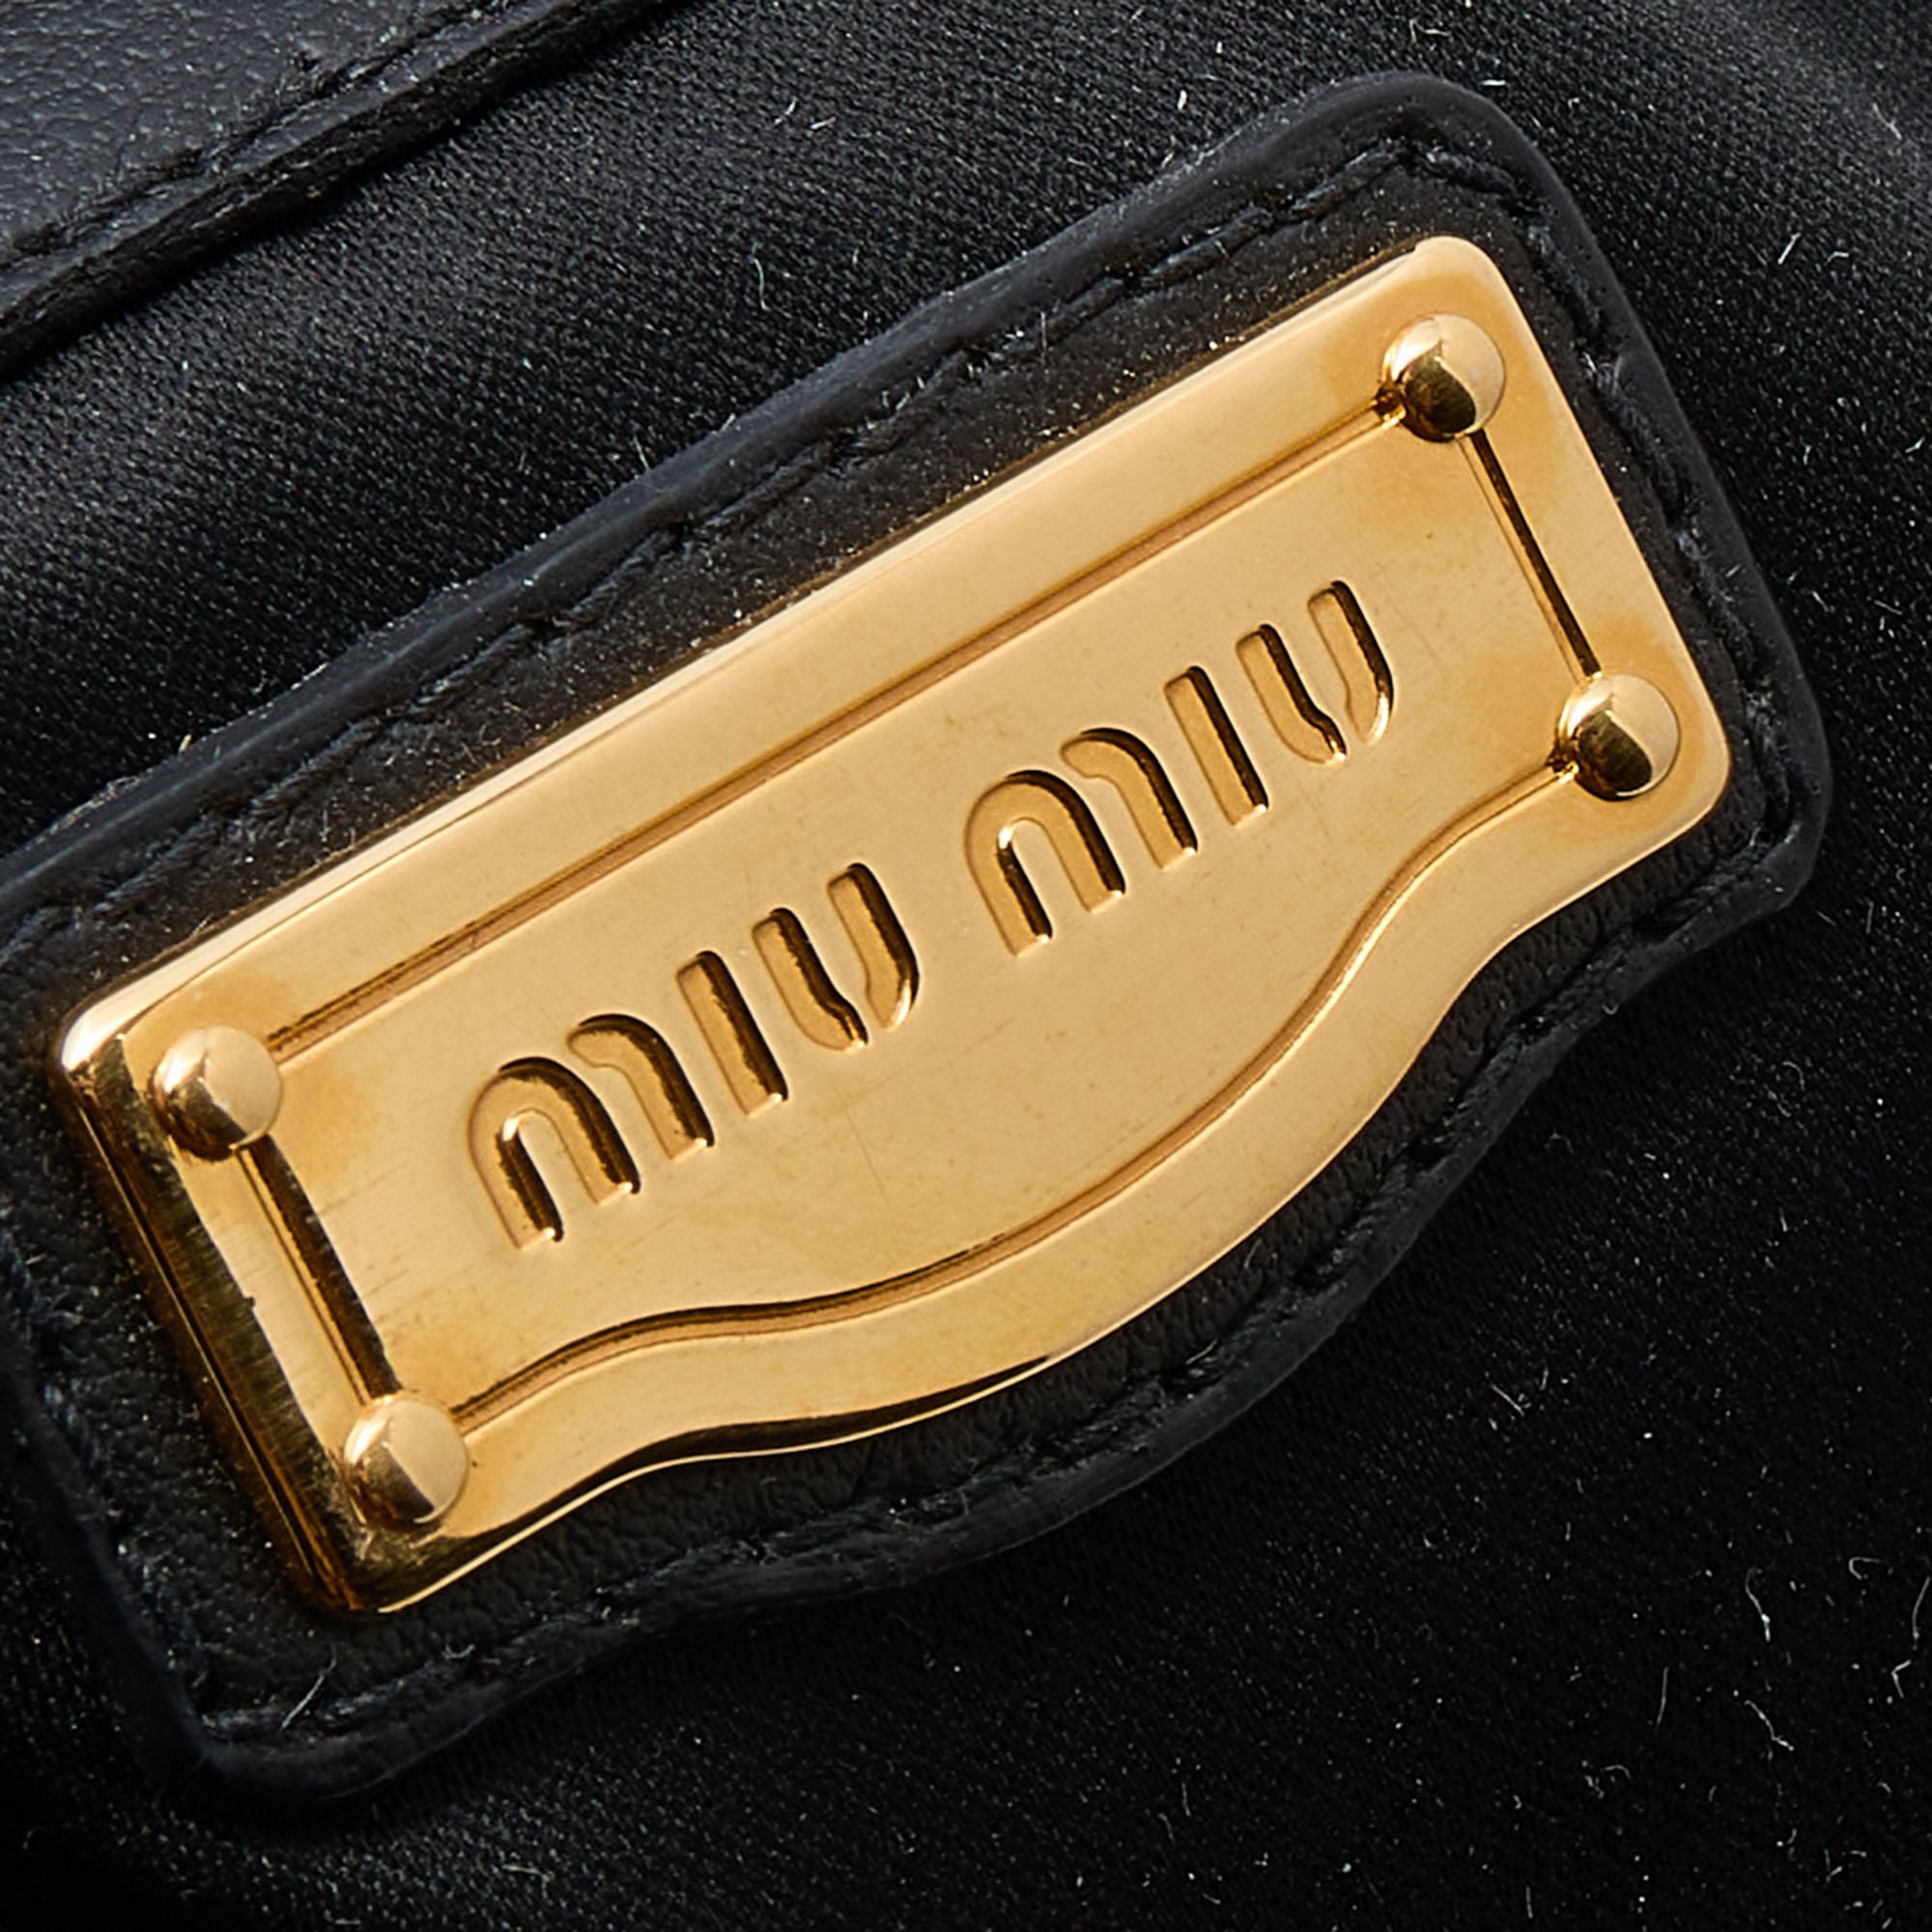 Miu Miu Black Patent Leather Tote 4